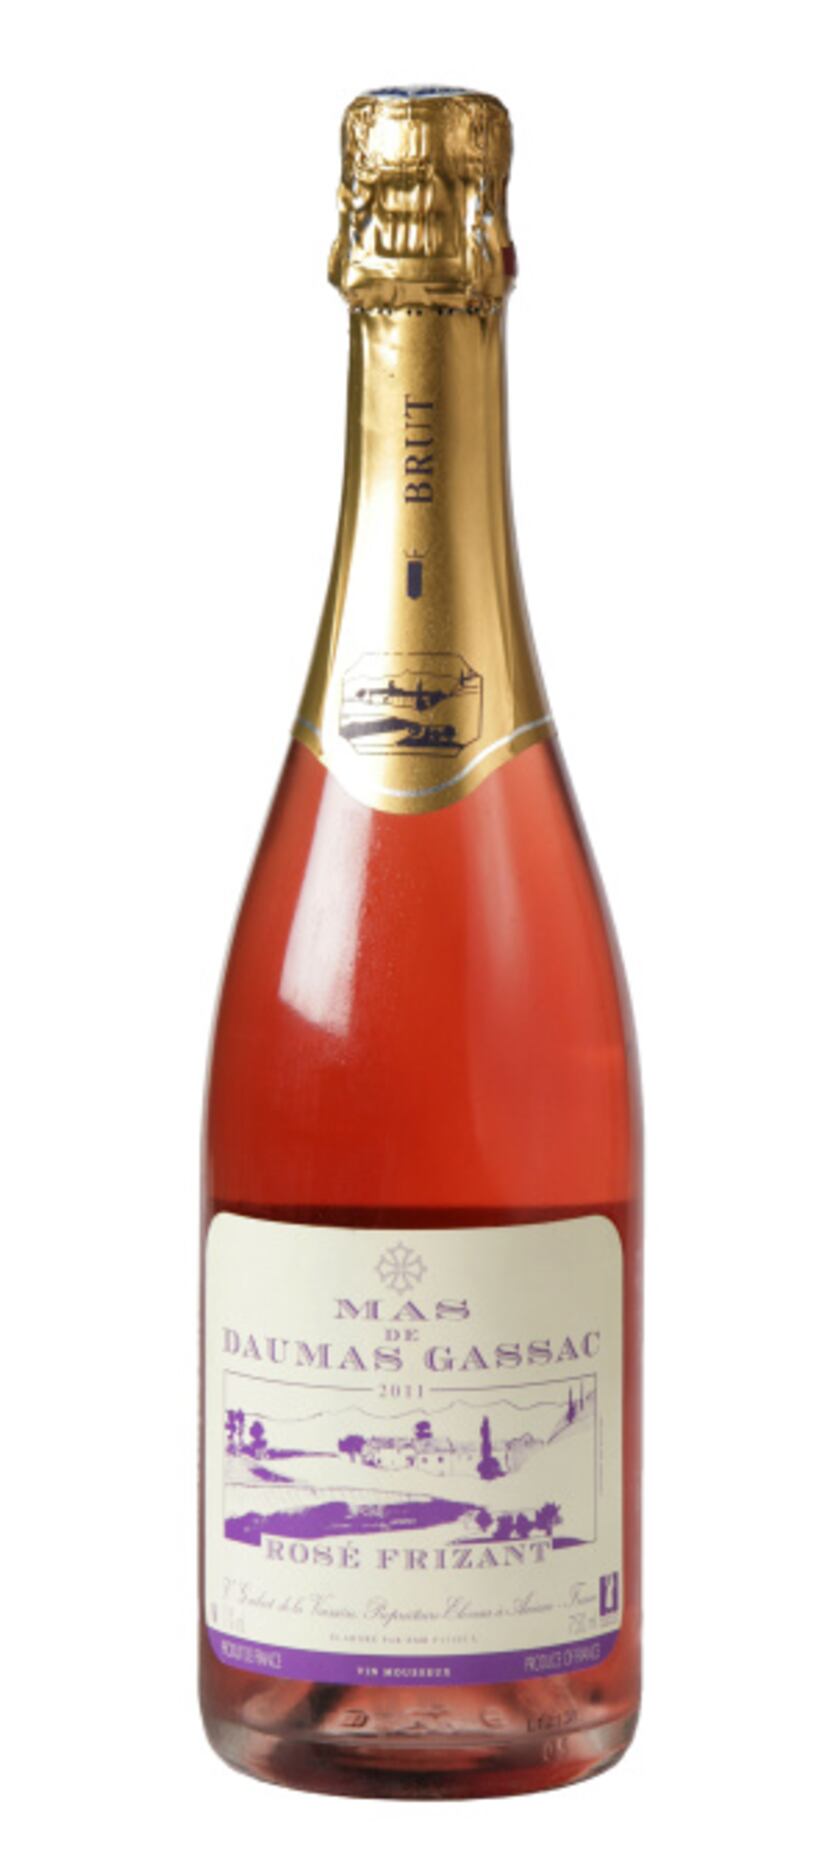 Mas de Daumas Gassac Rosé Frizant 2011, France. $24.99 to $27.99; the Art of Wine on...